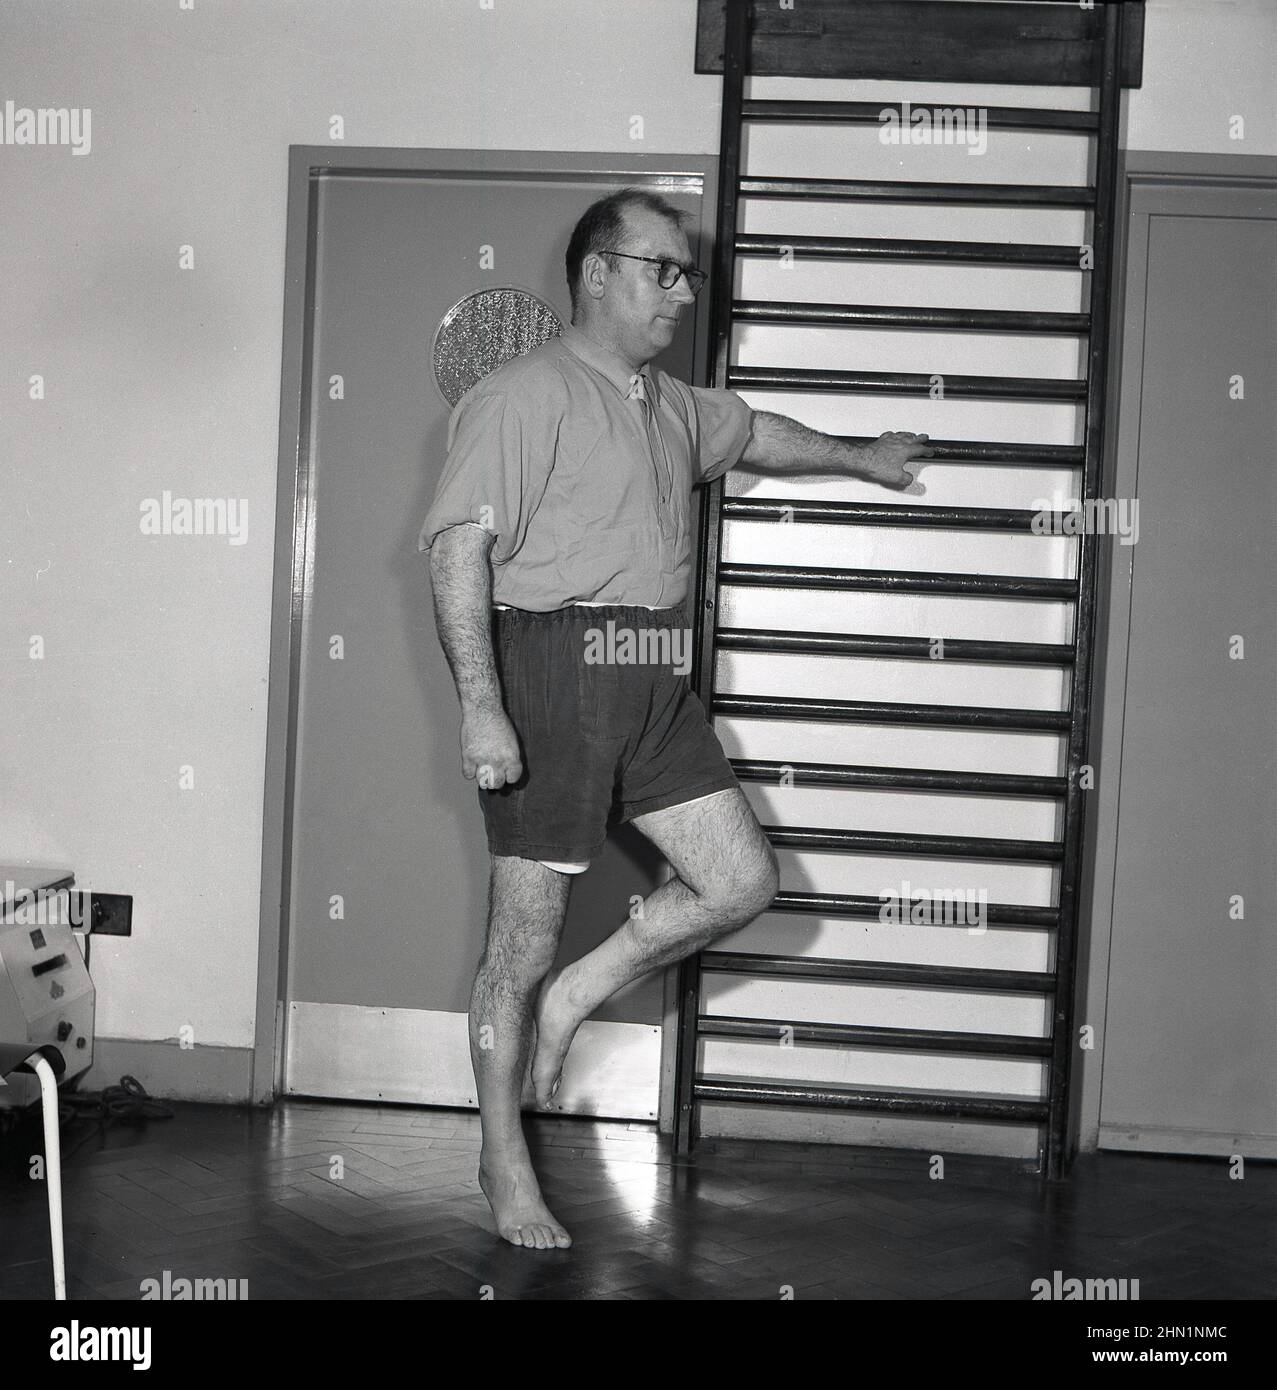 1950s, historisch, ein männlicher Arbeiter, der im Rahmen einer betrieblichen medizinischen oder gesundheitlichen Überprüfung Balancierübungen mit einer Hand auf einem Parrelel-Stab und einem Knie nach oben macht, Abbey Works, Port Talbot, Wales, Großbritannien. Stockfoto